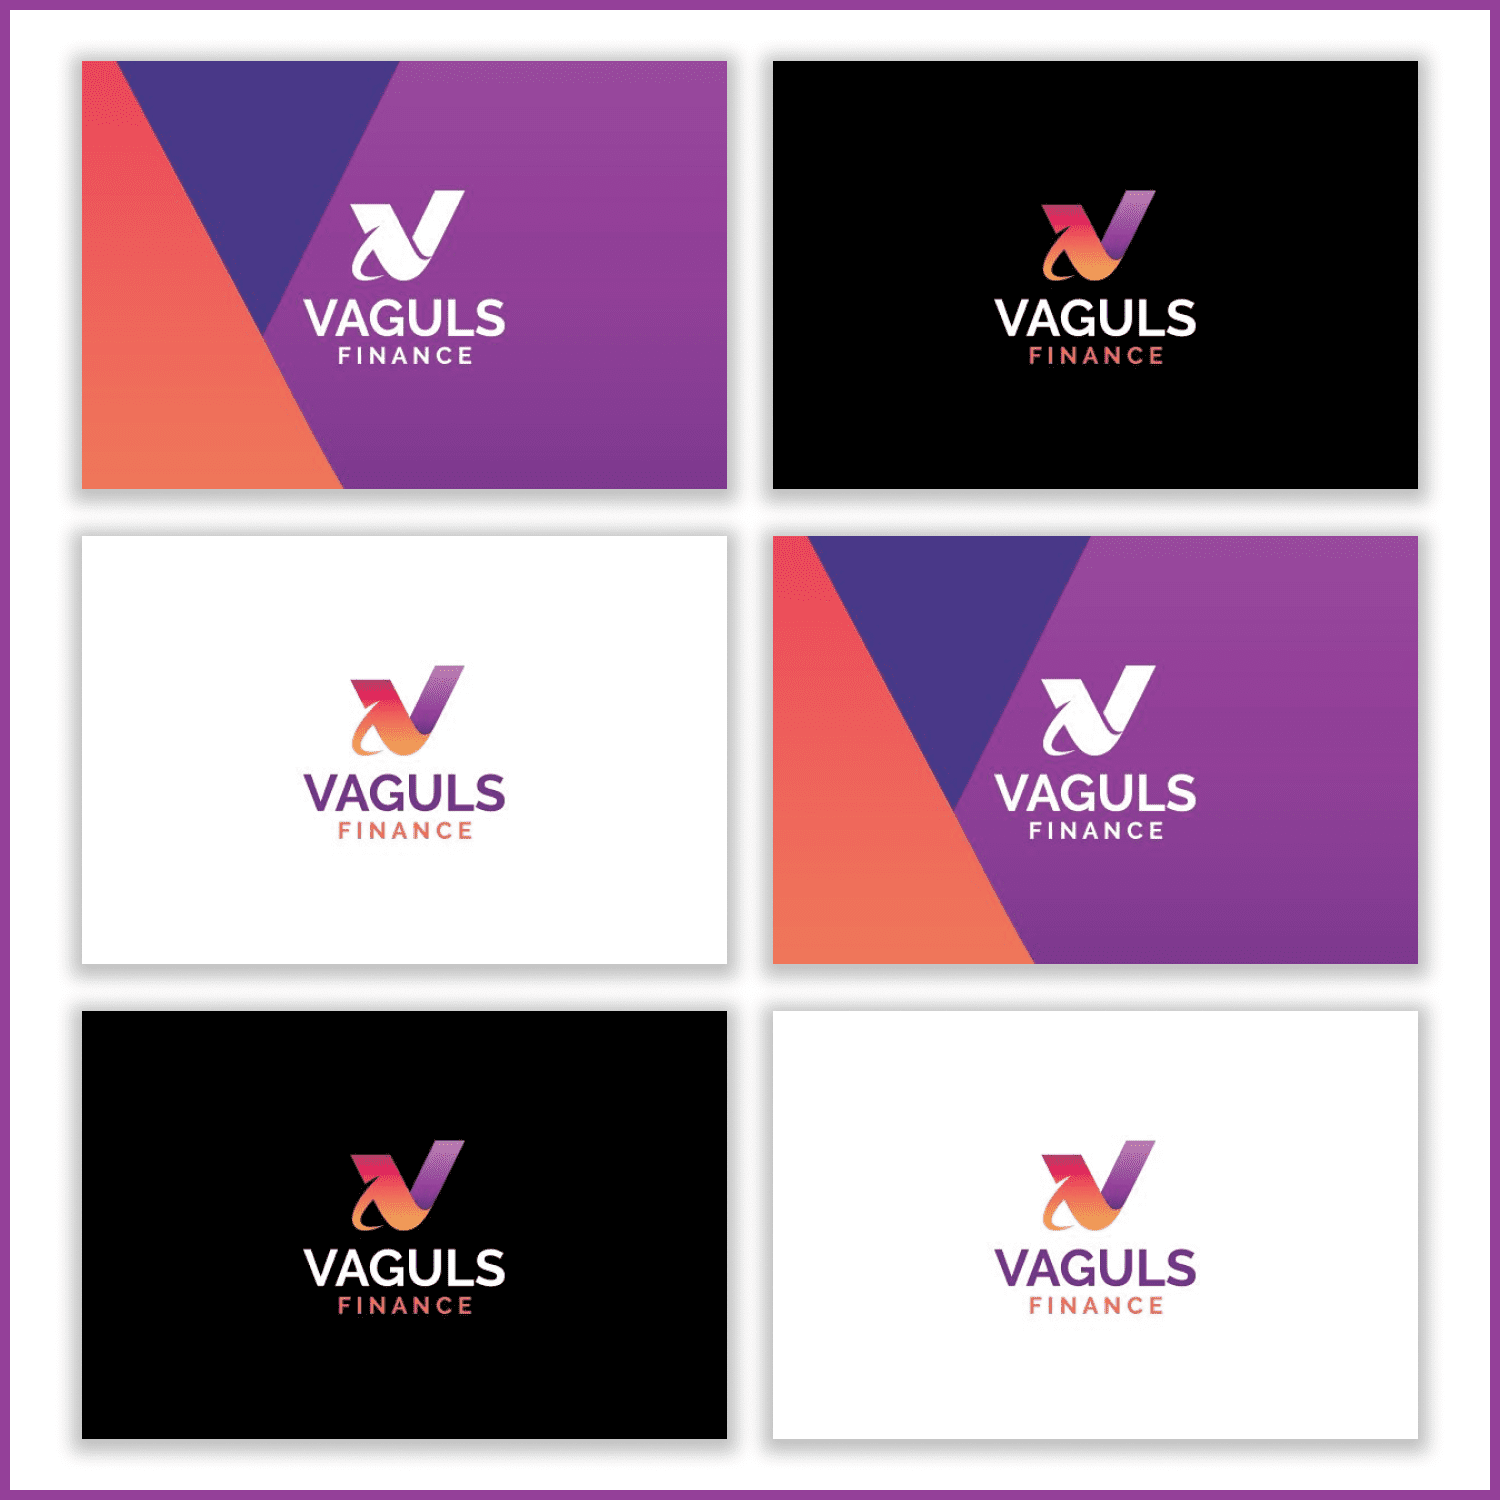 Vaguls - Letter V Logo cover.